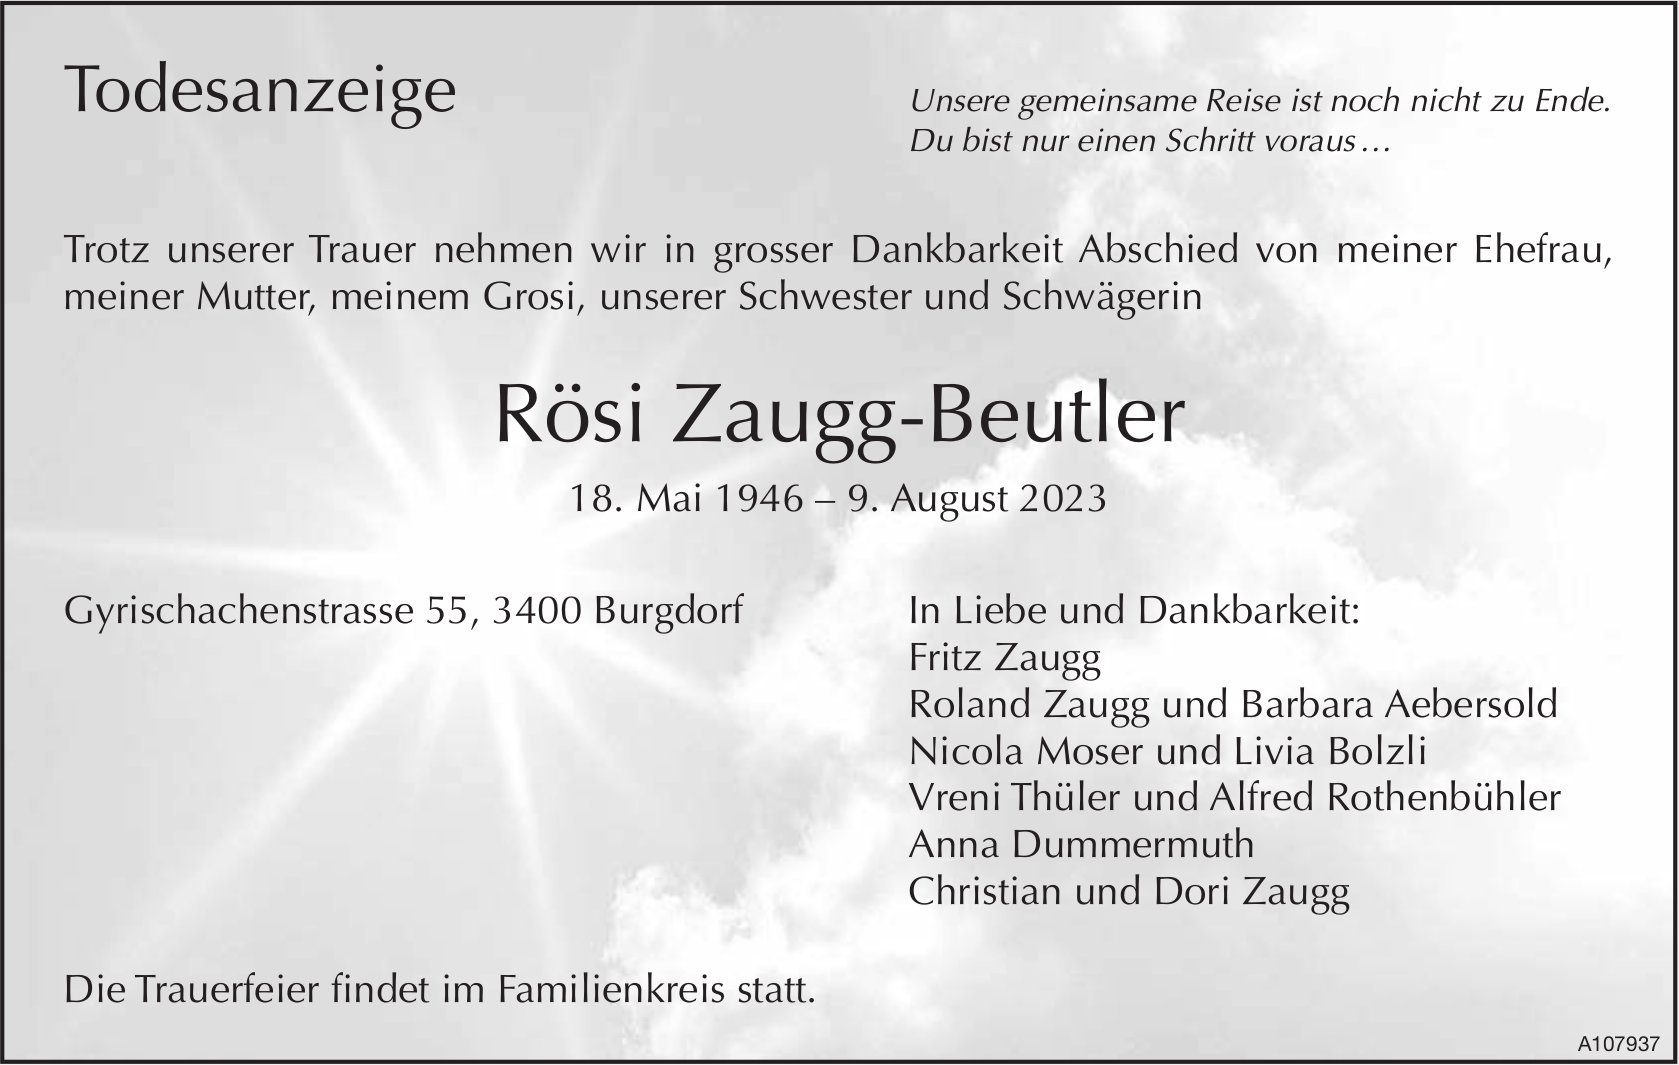 Rösi Zaugg-Beutler, August 2023 / TA